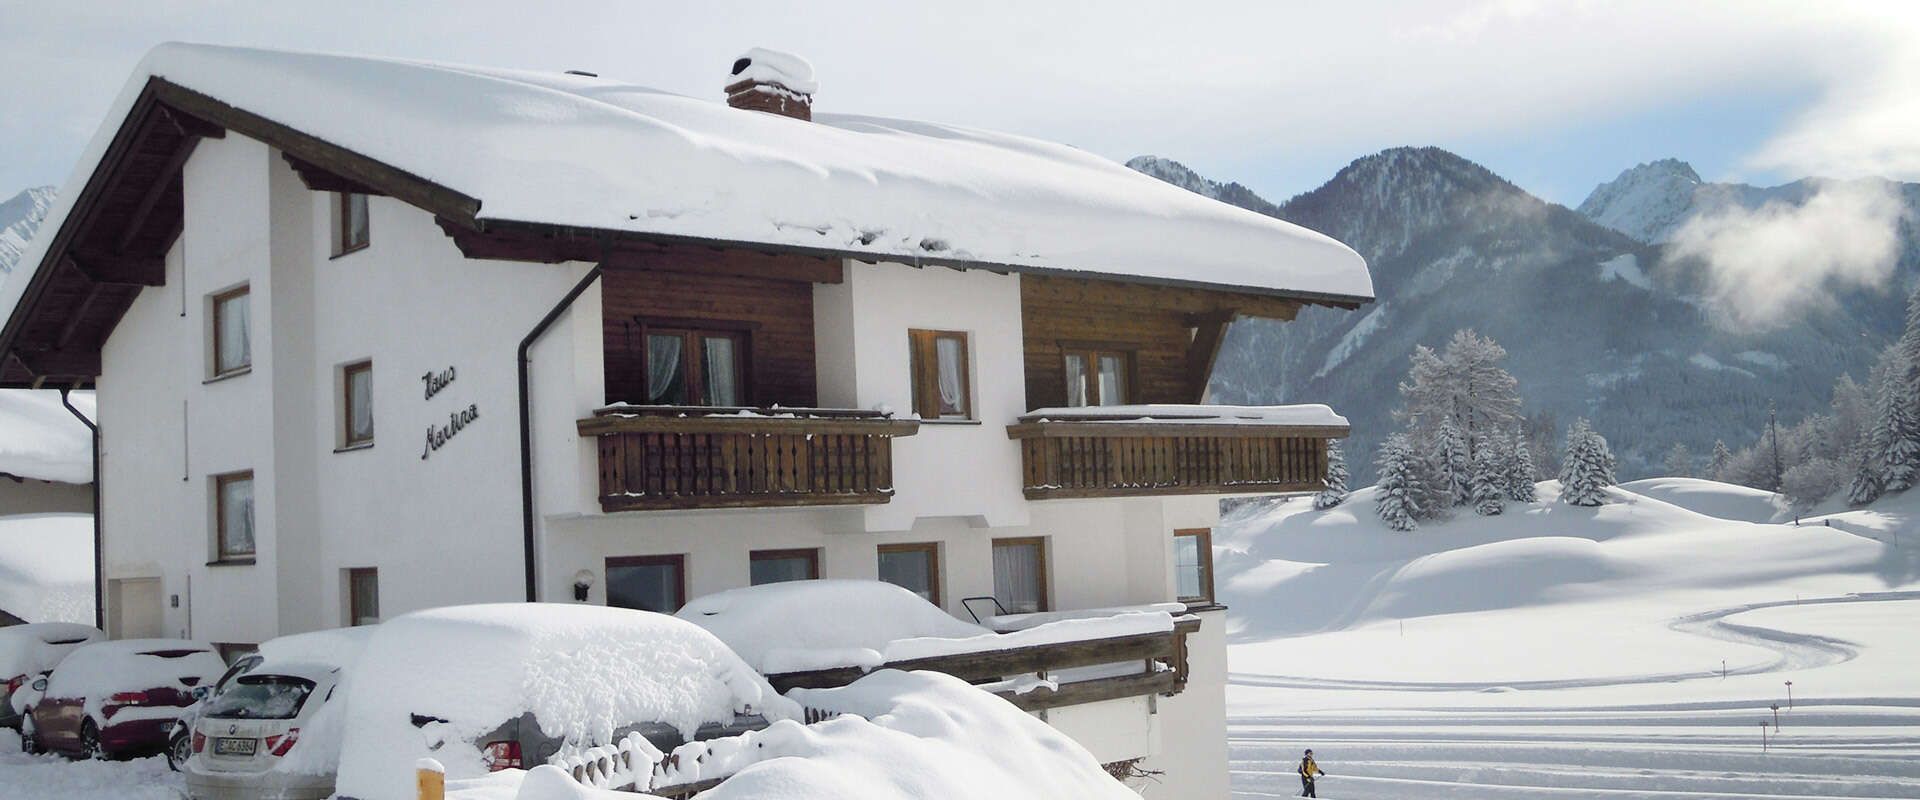 Haus Martina in Serfaus Tirol im Winter